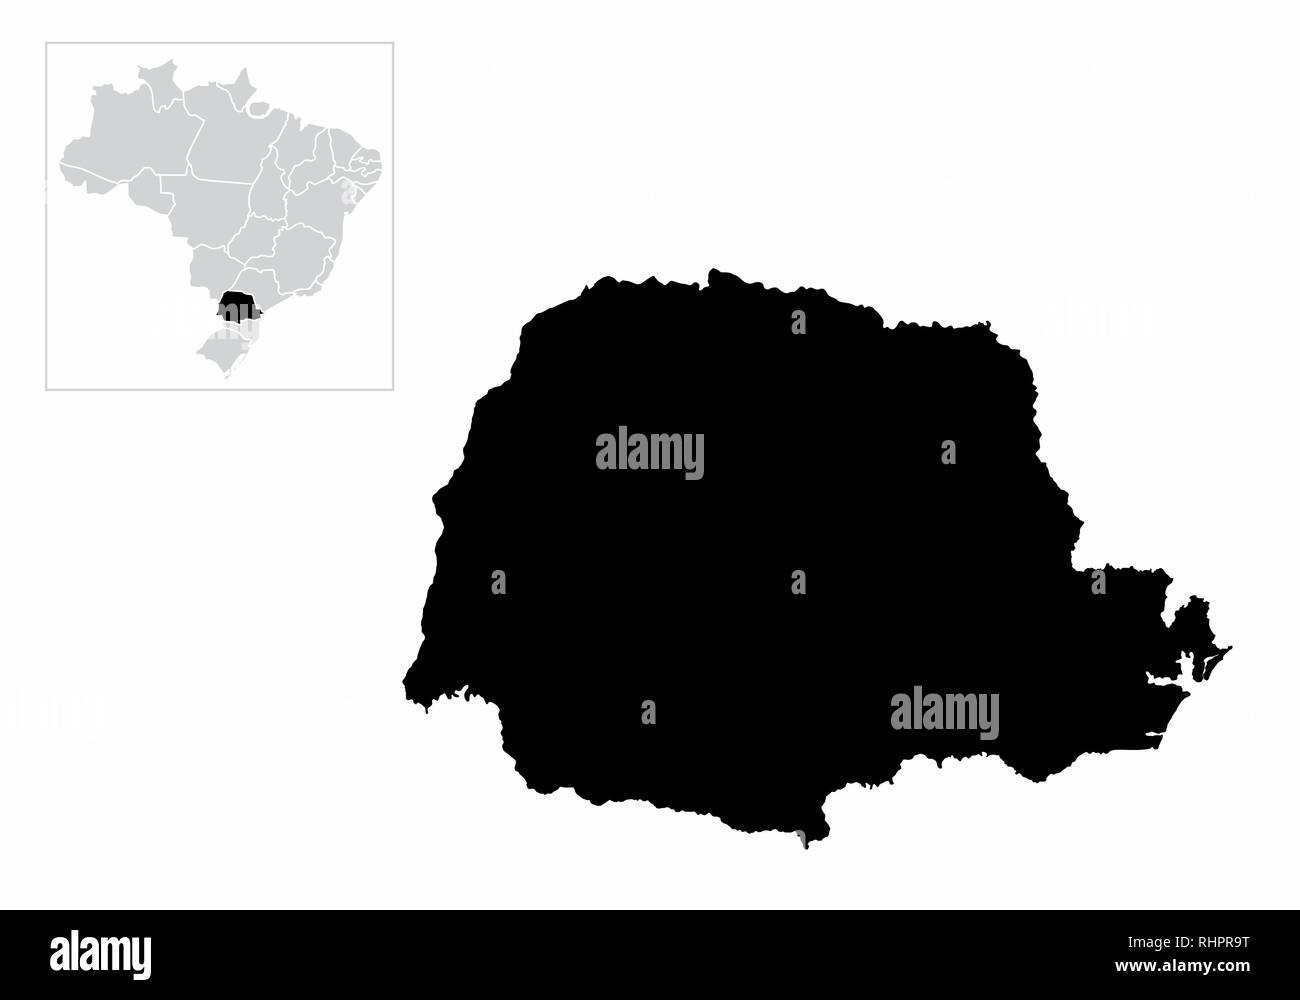 Illustration de l'État de Parana et son emplacement dans la carte du Brésil Illustration de Vecteur